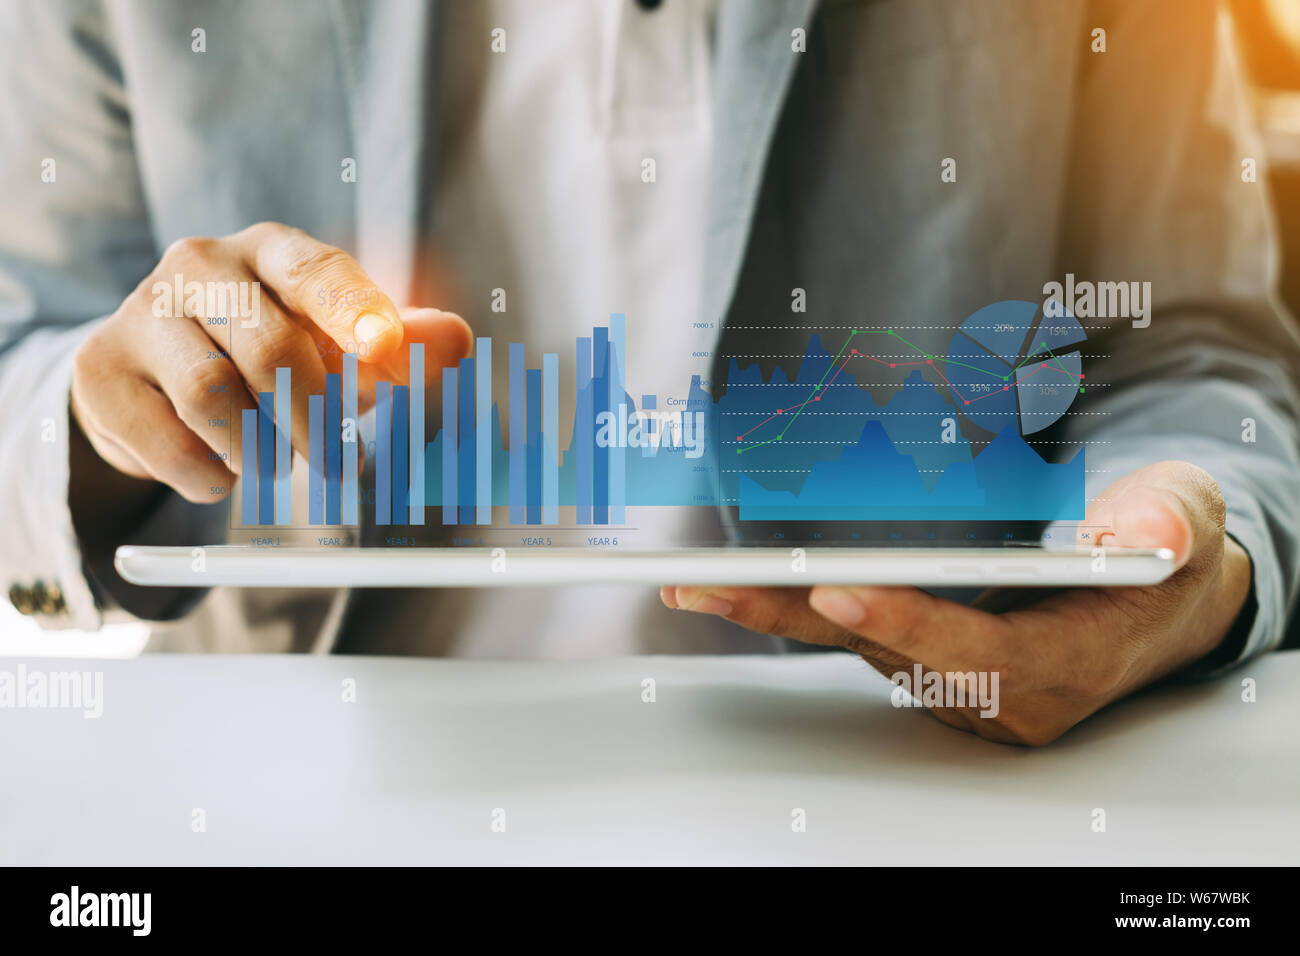 L'analyse financière de l'entreprise Investisseurs Affaires fonds communs de travail rapport numérique avec la technologie graphique de réalité augmentée. Concept pour affaires, Banque D'Images